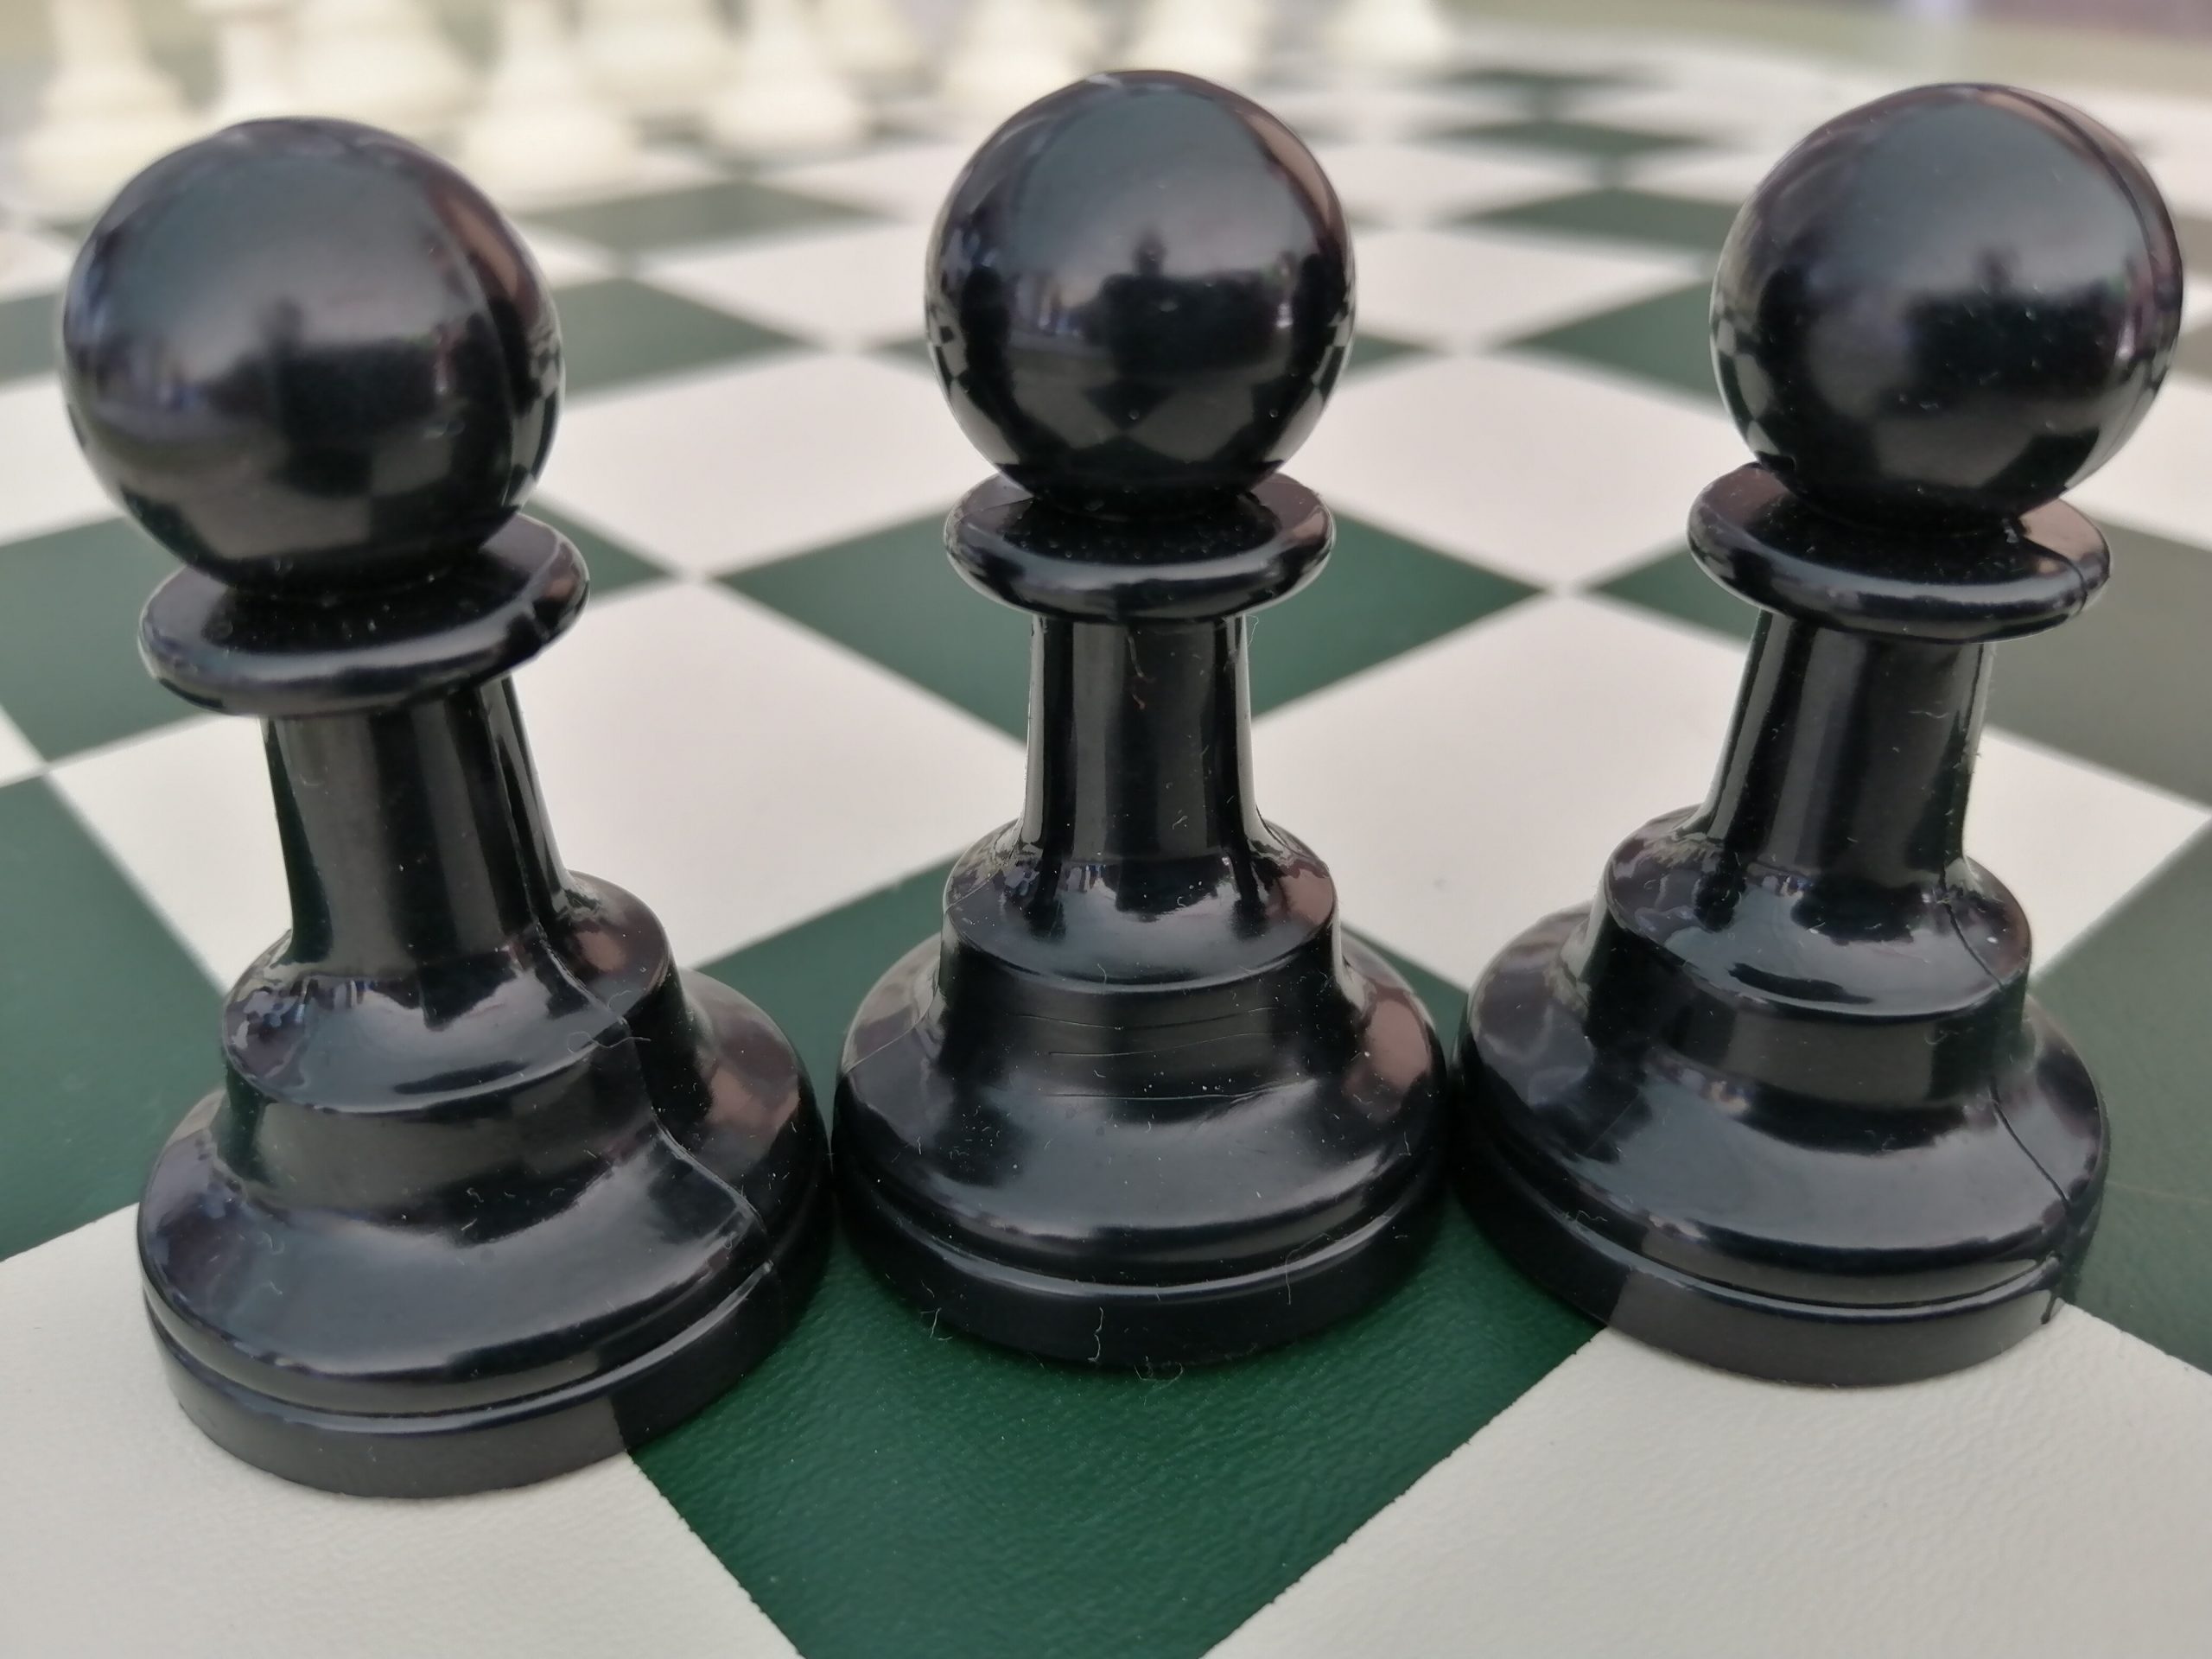 Torneo de ajedrez 3 check, tres jaques y pierdes la partida